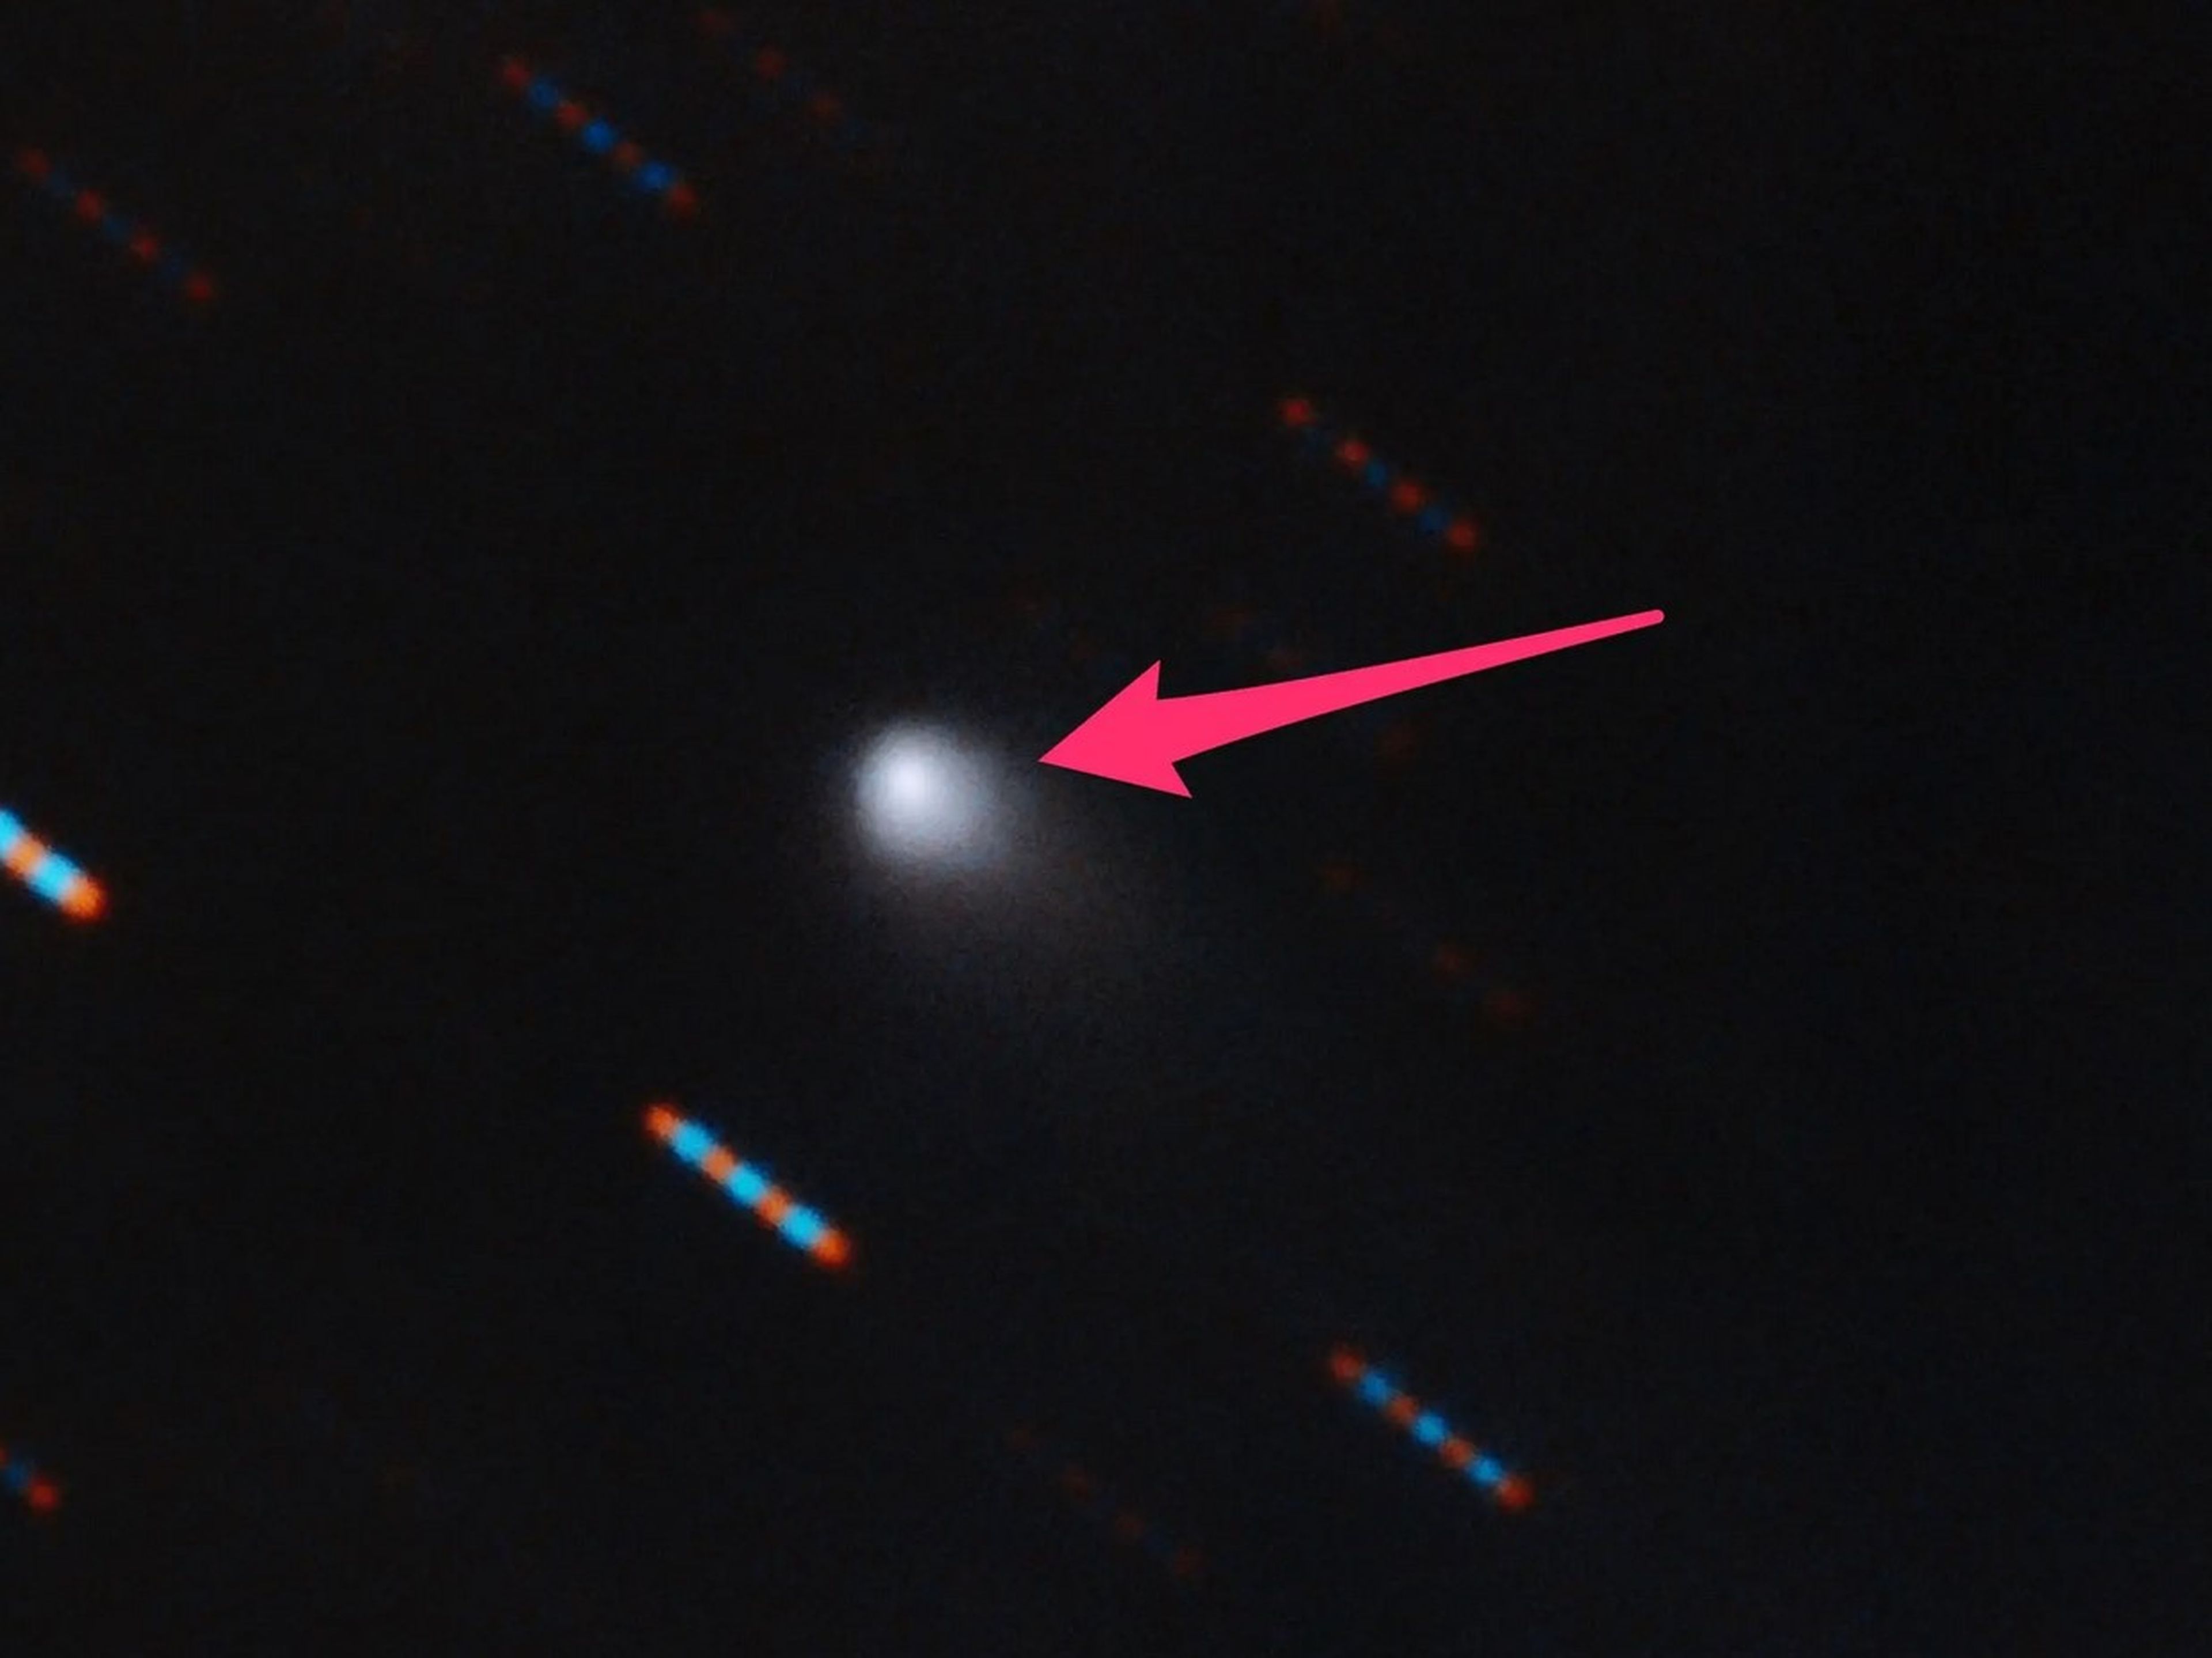 El cometa 2I/Borisov, el segundo objeto interestelar jamás detectado en nuestro Sistema Solar. Los guiones azules y rojos son estrellas de fondo que aparecen medida que se mueve el cometa.